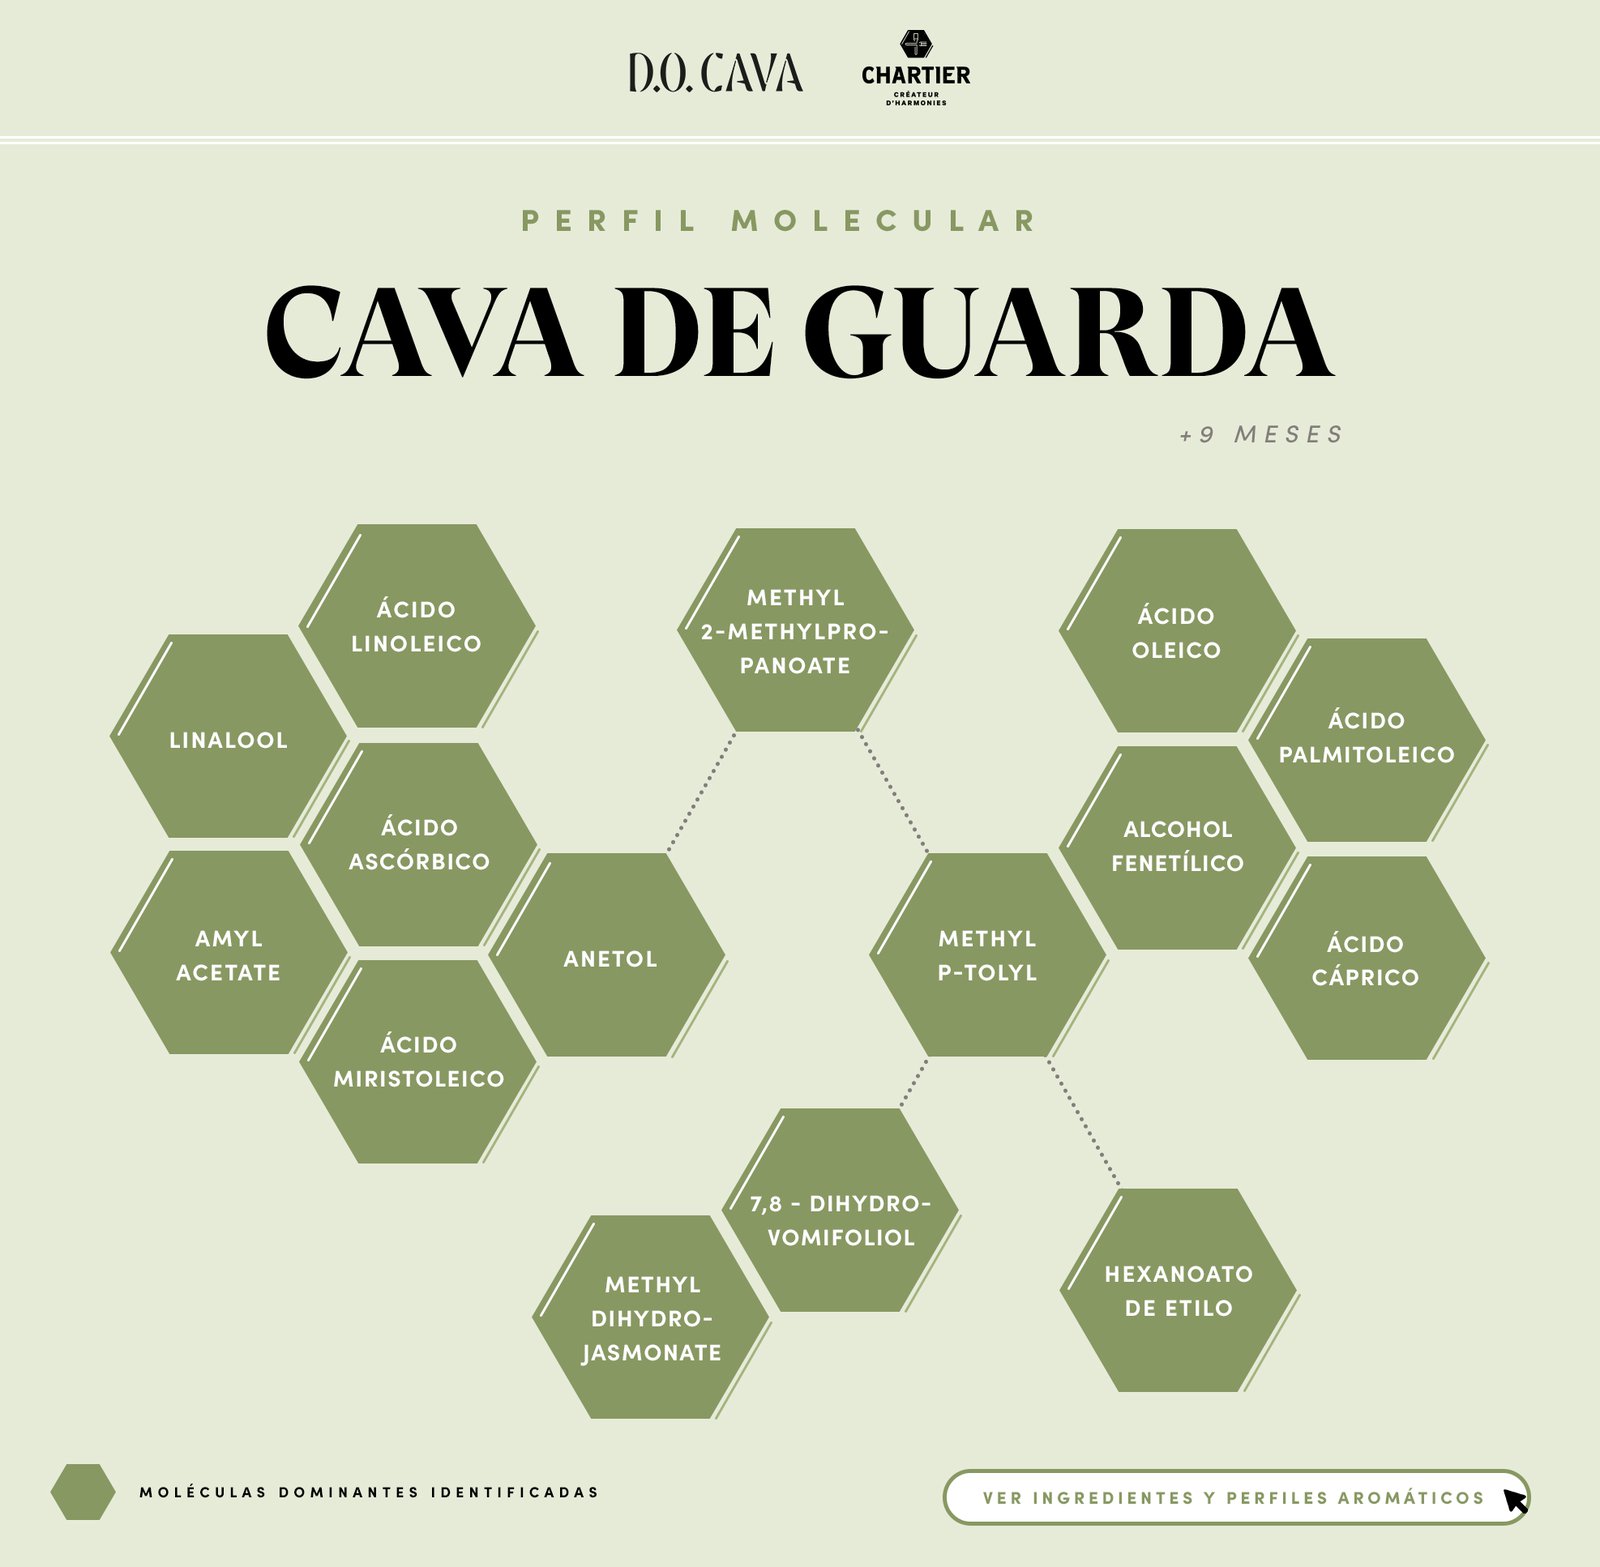 CAST-Summary-Cava-de-Guarda.jpg